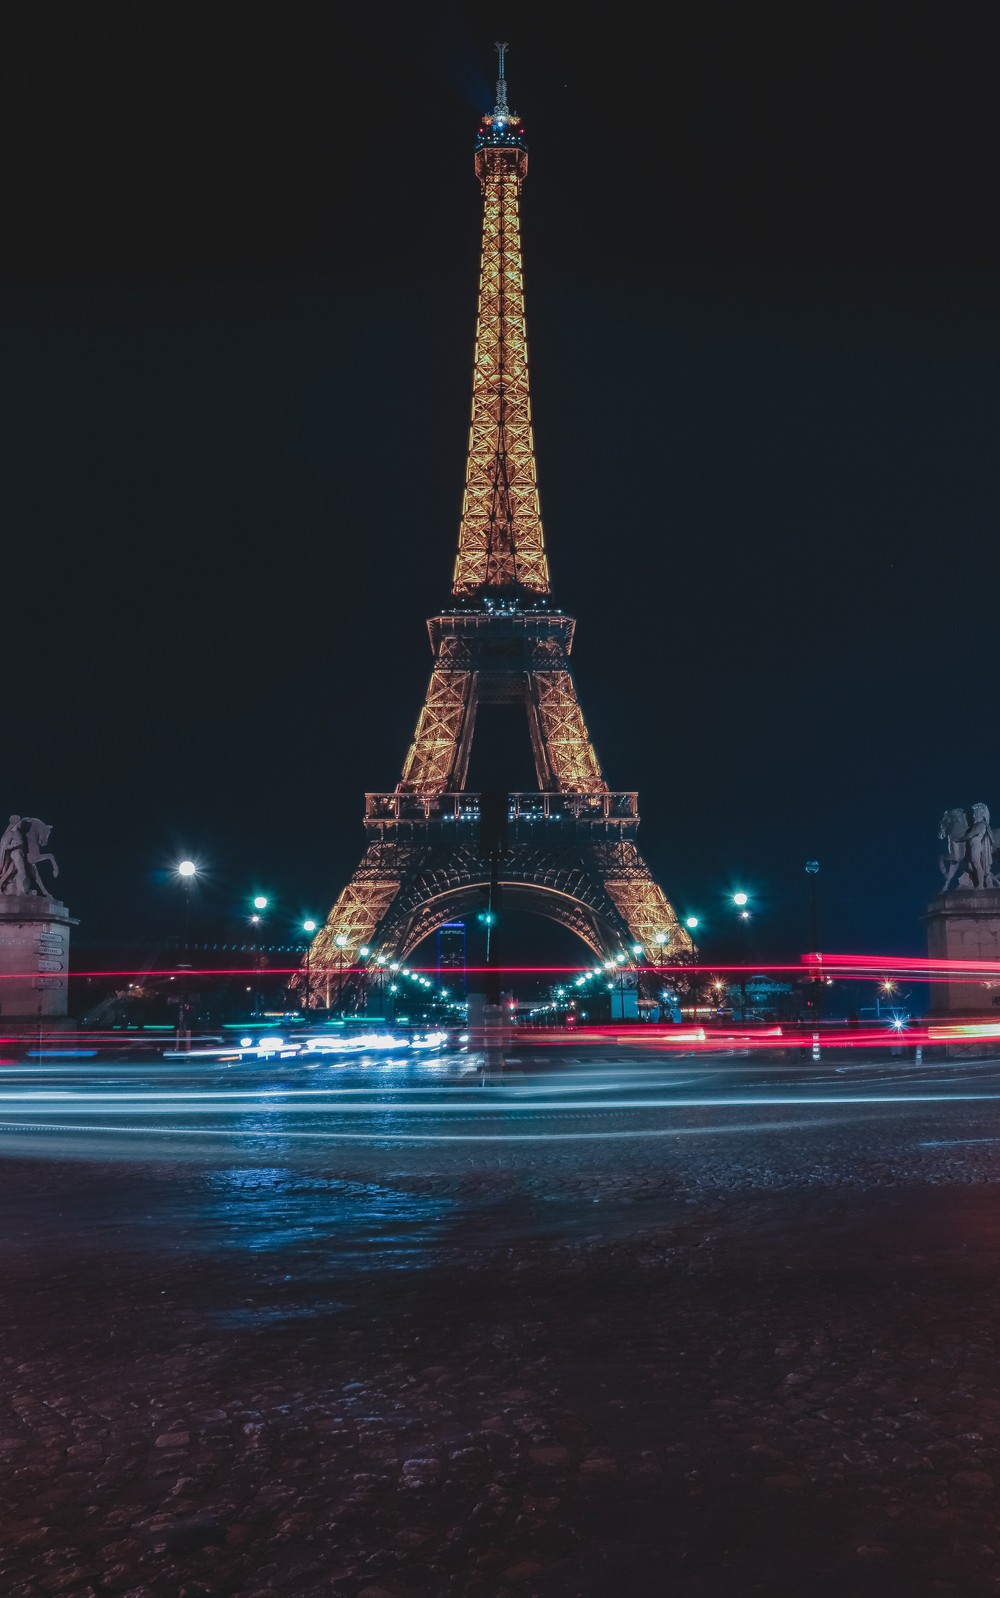 Chụp hình tháp Eiffel vào buổi tối có thể khiến bạn... bị kiện ra toà, và đây là lí do! - Ảnh 1.